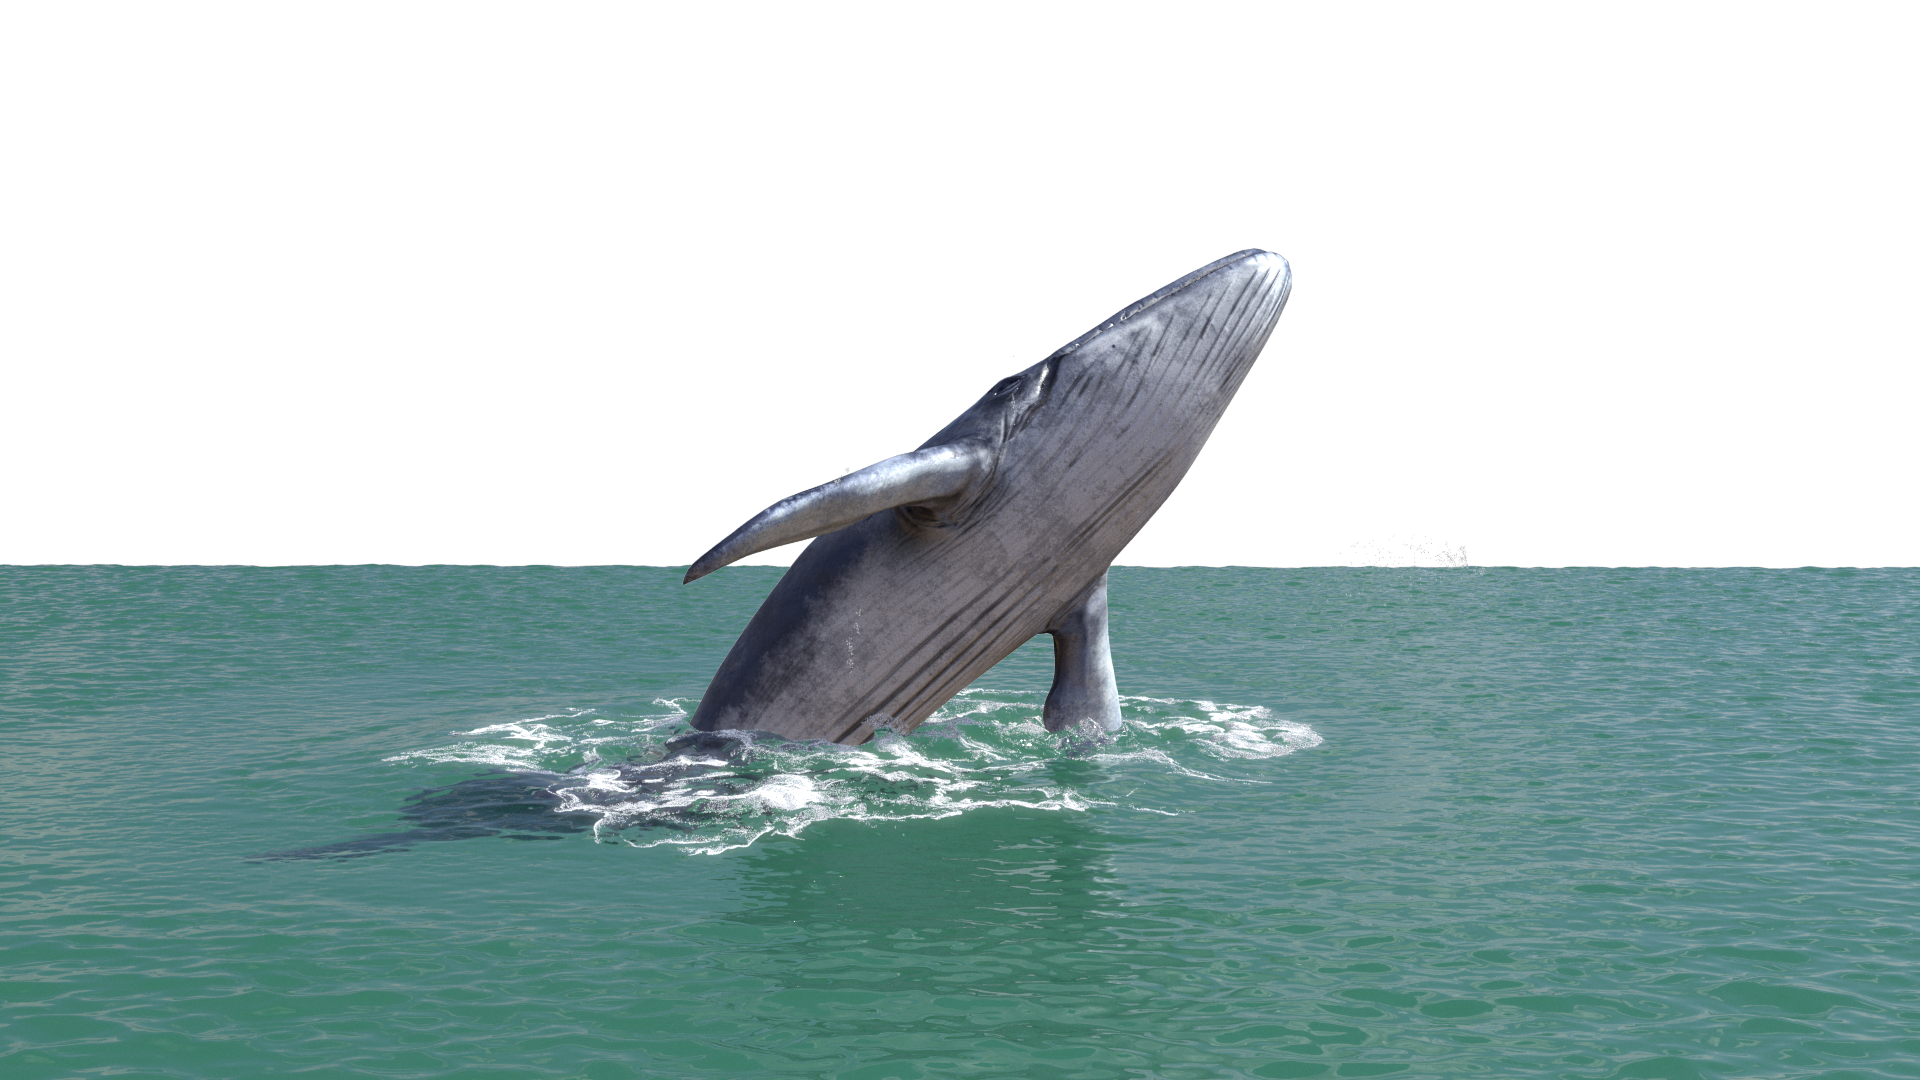 水族馆白鲸摄影图高清摄影大图-千库网